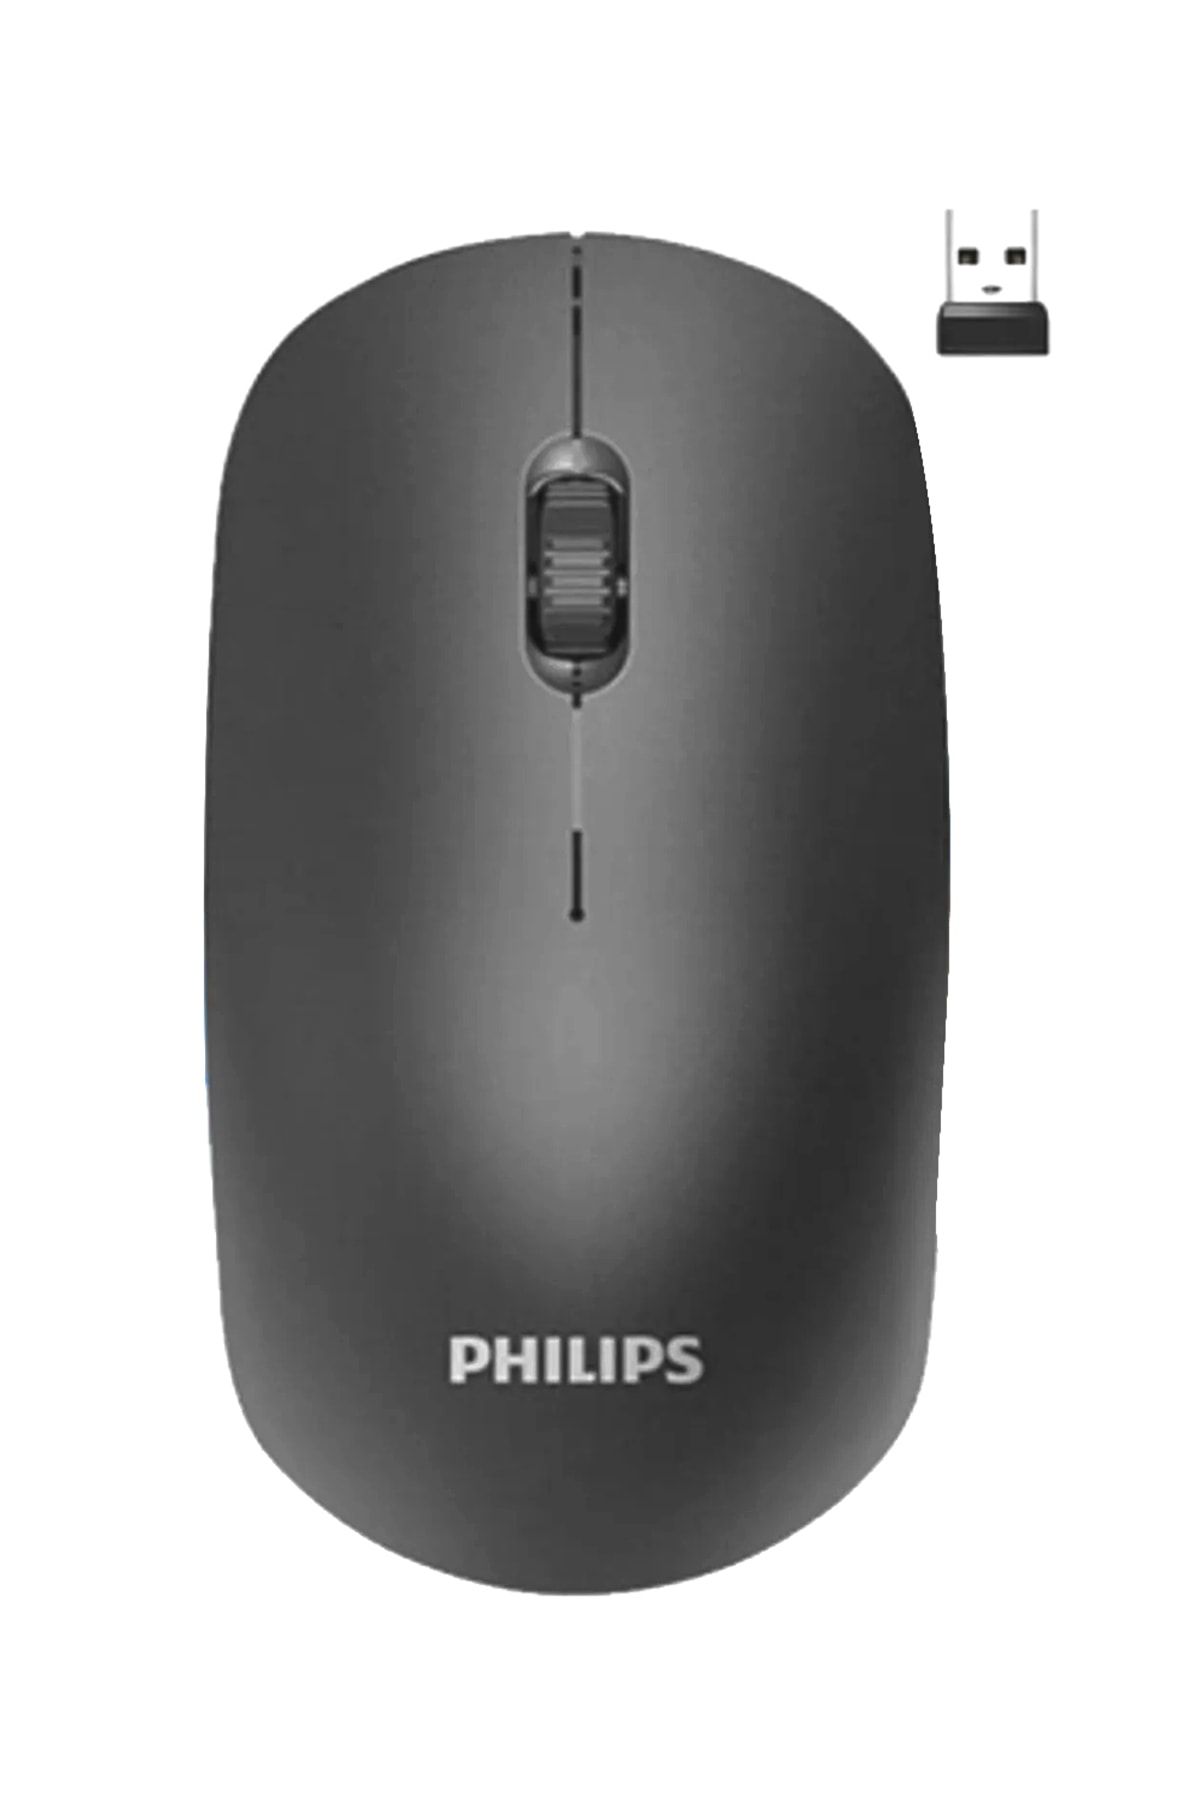 Philips M221 Sessiz Kablosuz Wireless Mouse 2.4Ghz 1600 Dpi Siyah ( Usb alıcısı kapağın içindedir )